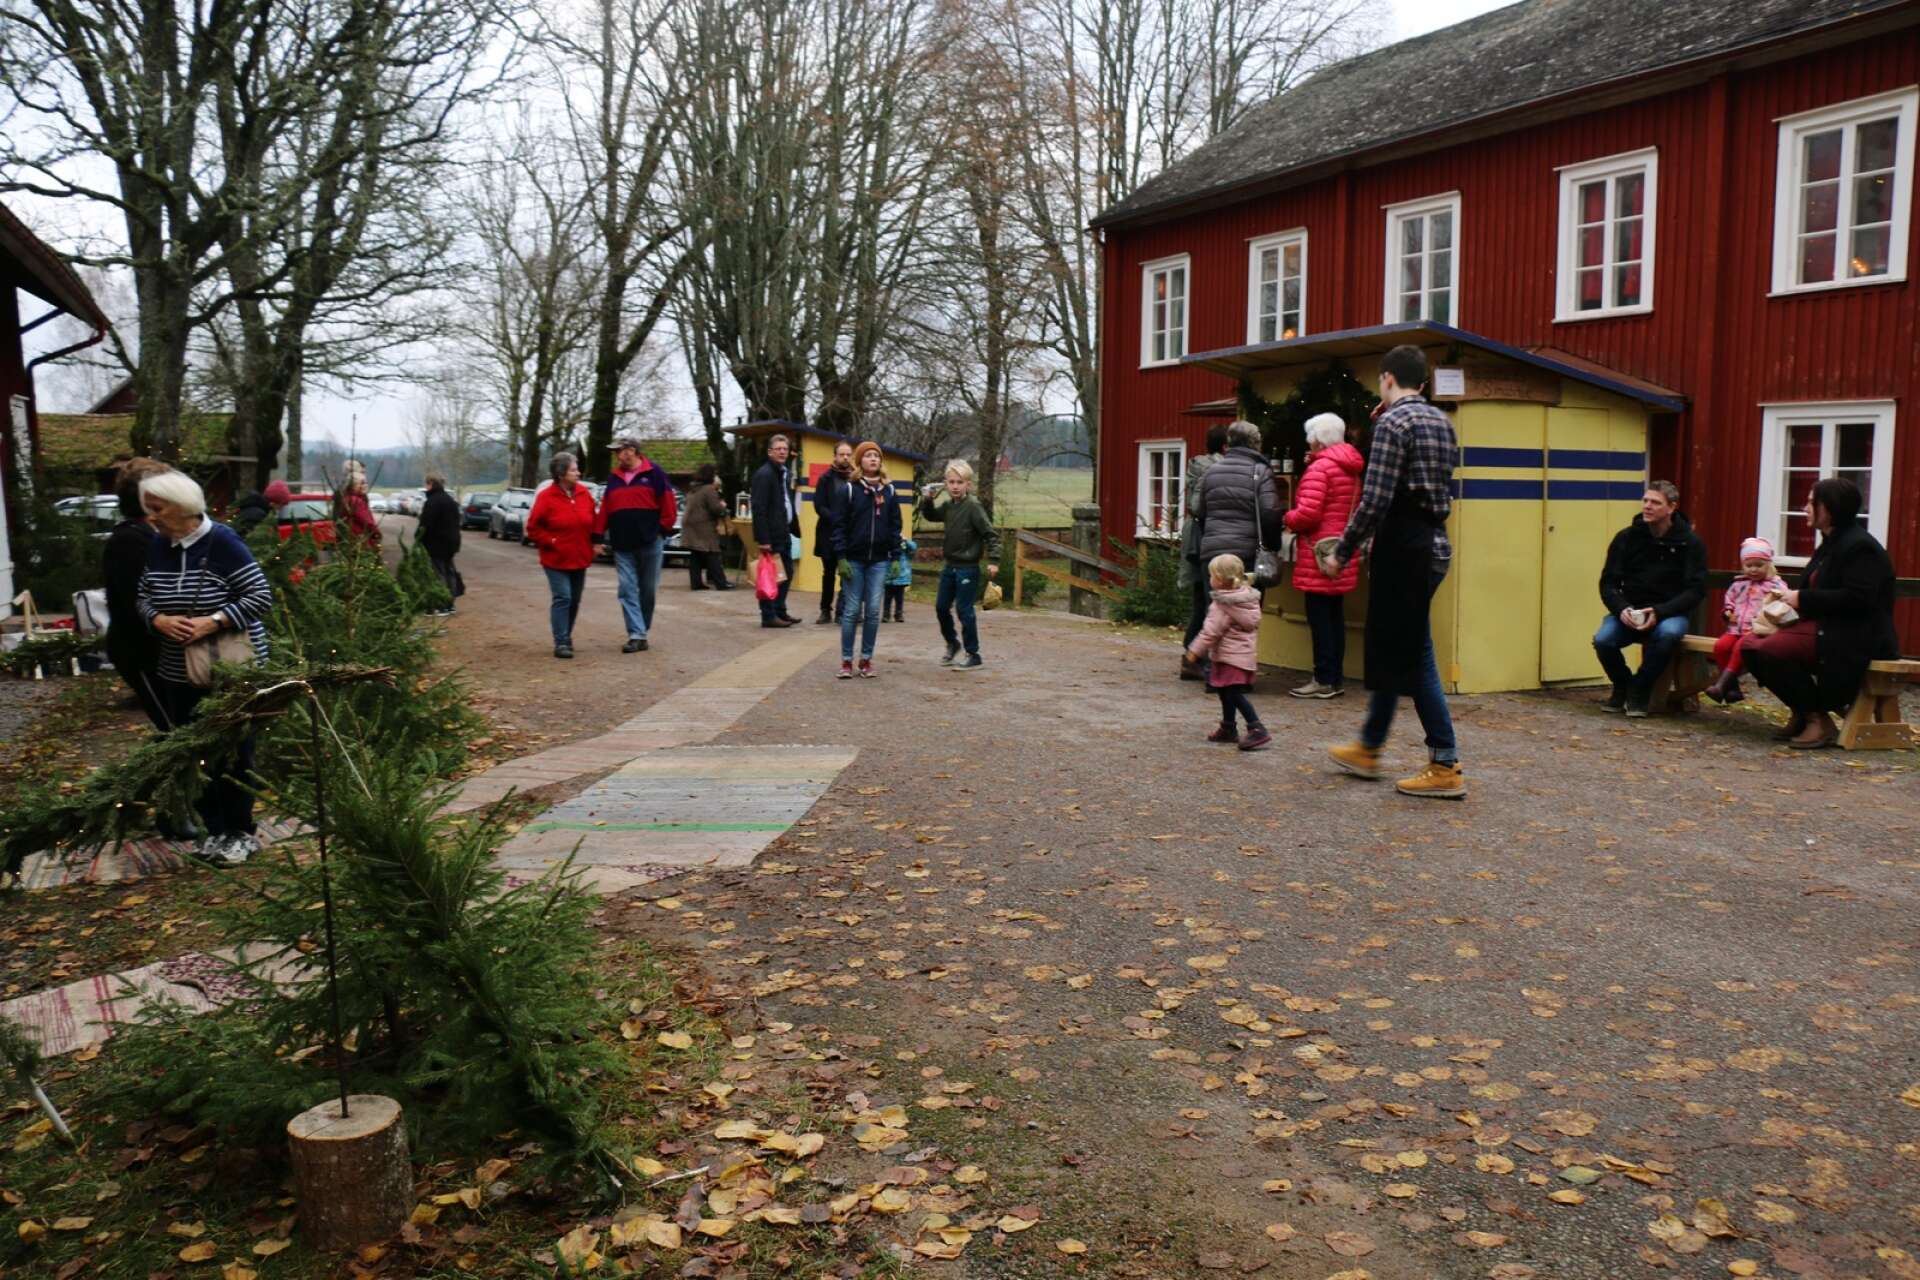 Julmarknaden i Alltorp brukar locka mycket folk. 2019 firade julmarknaden 40 år under pompa och ståt med besök av landshövdingen.